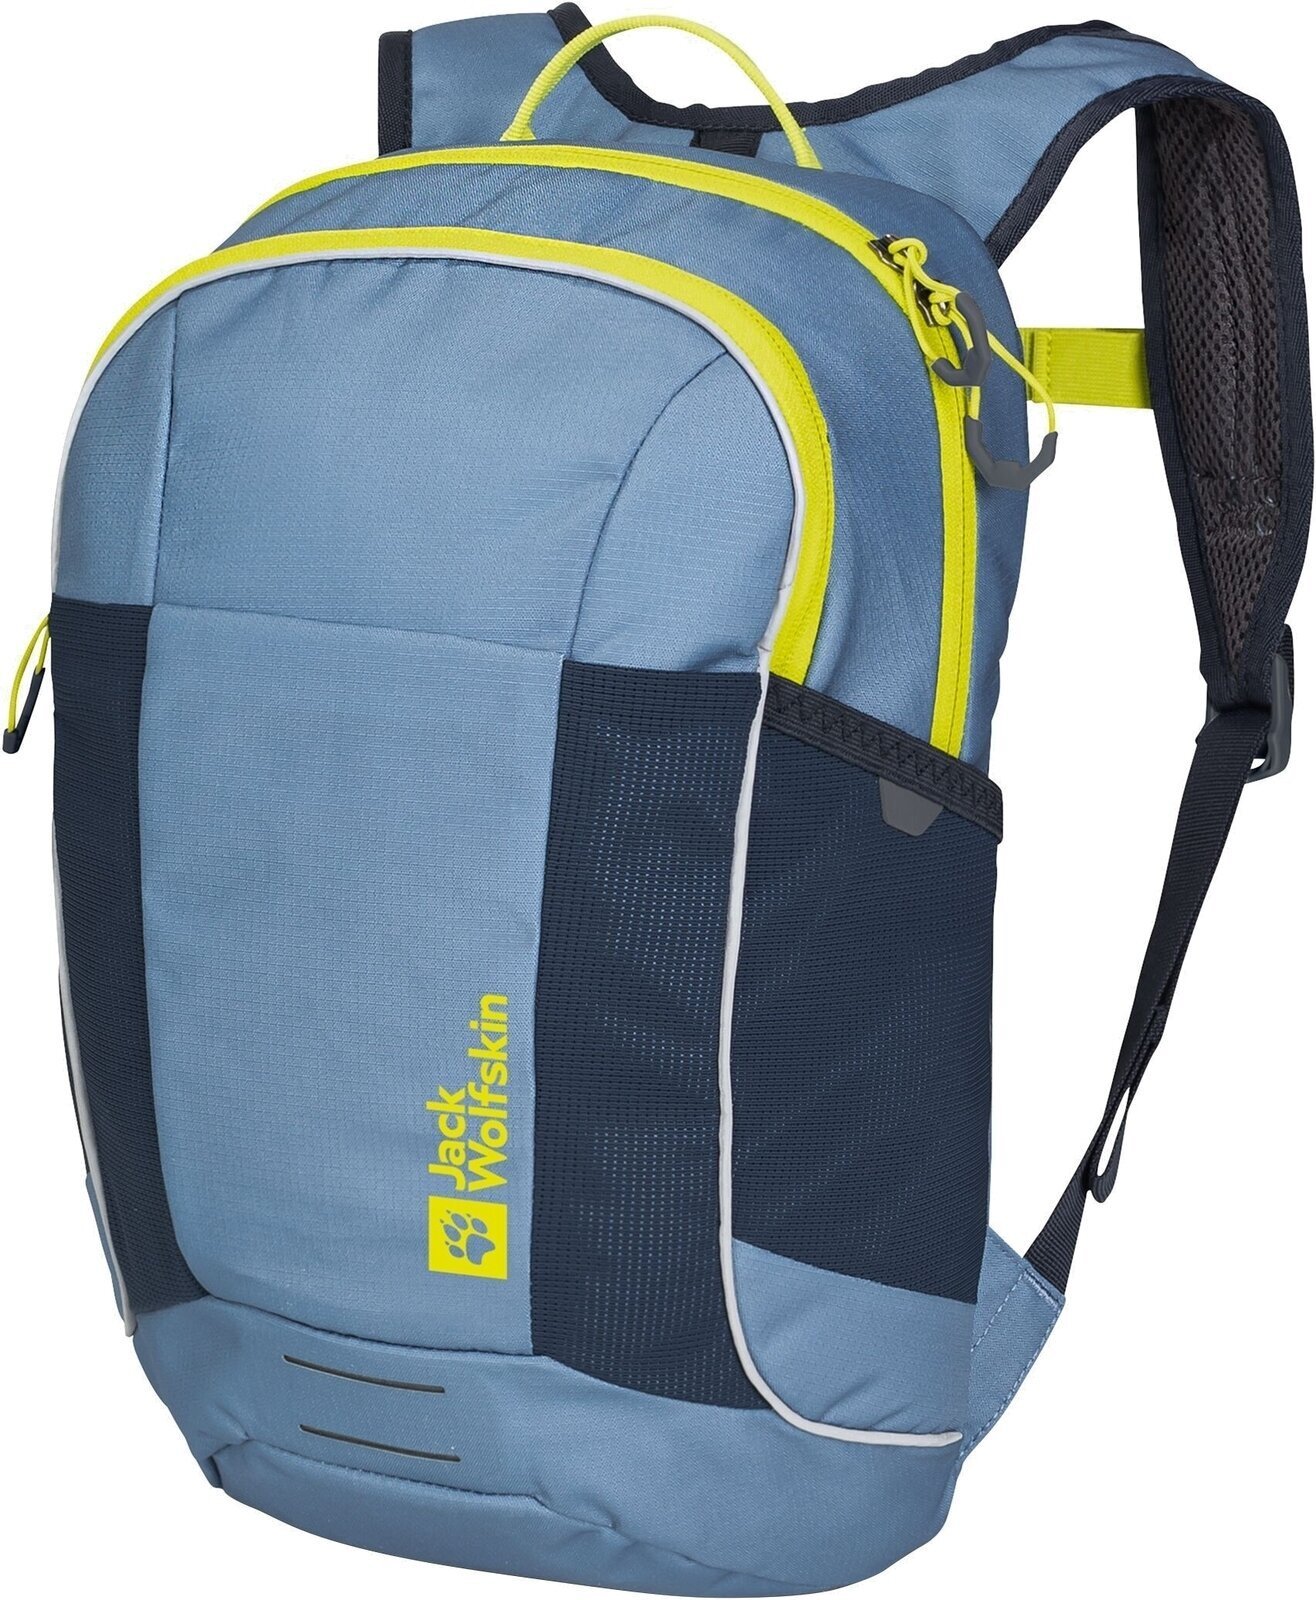 Outdoor Backpack Jack Wolfskin Kids Moab Jam Elemental Blue One Size Outdoor Backpack